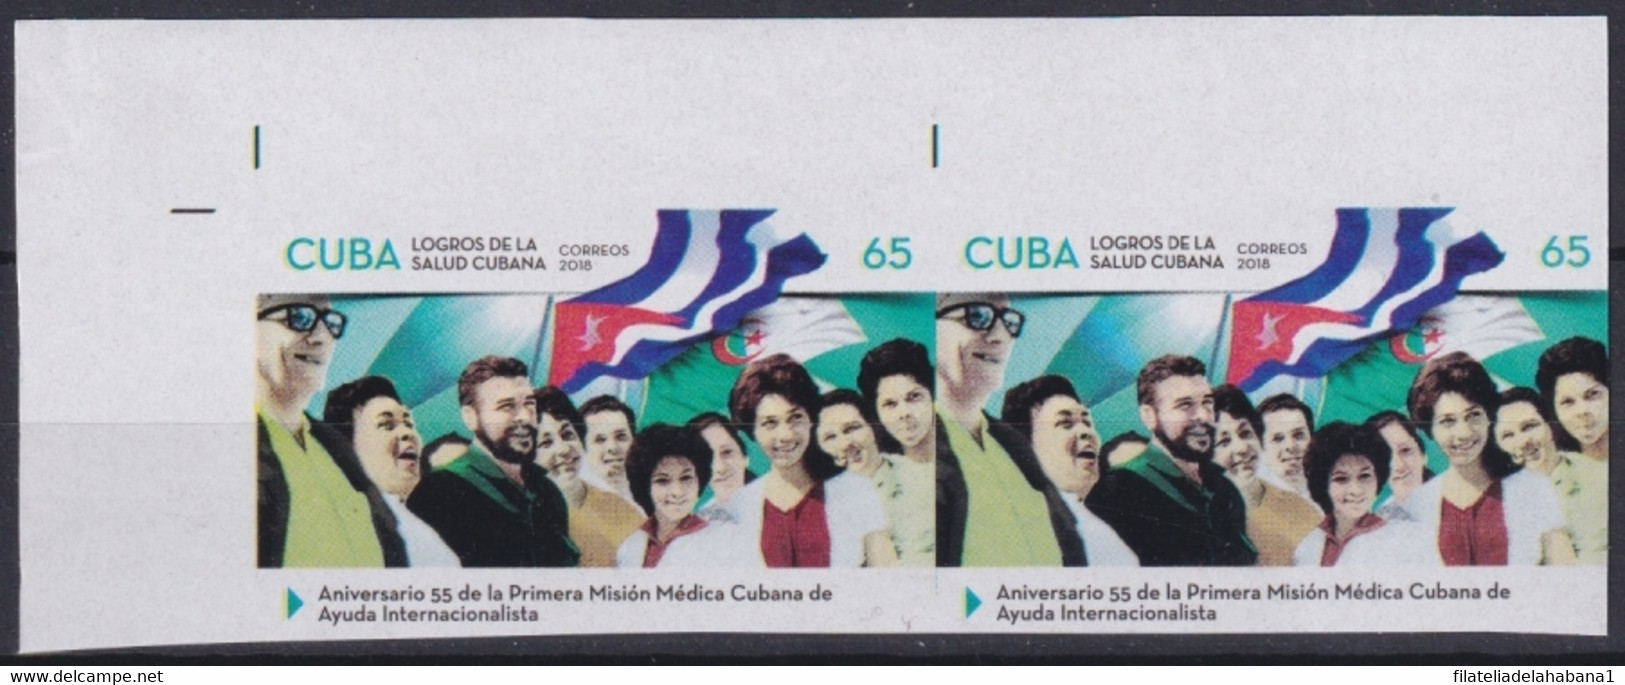 2018.224 CUBA MNH 2018 IMPERFORATED PROOF 65c ANIV MISION MEDICA ERNESTO CHE GUEVARA. - Sin Dentar, Pruebas De Impresión Y Variedades